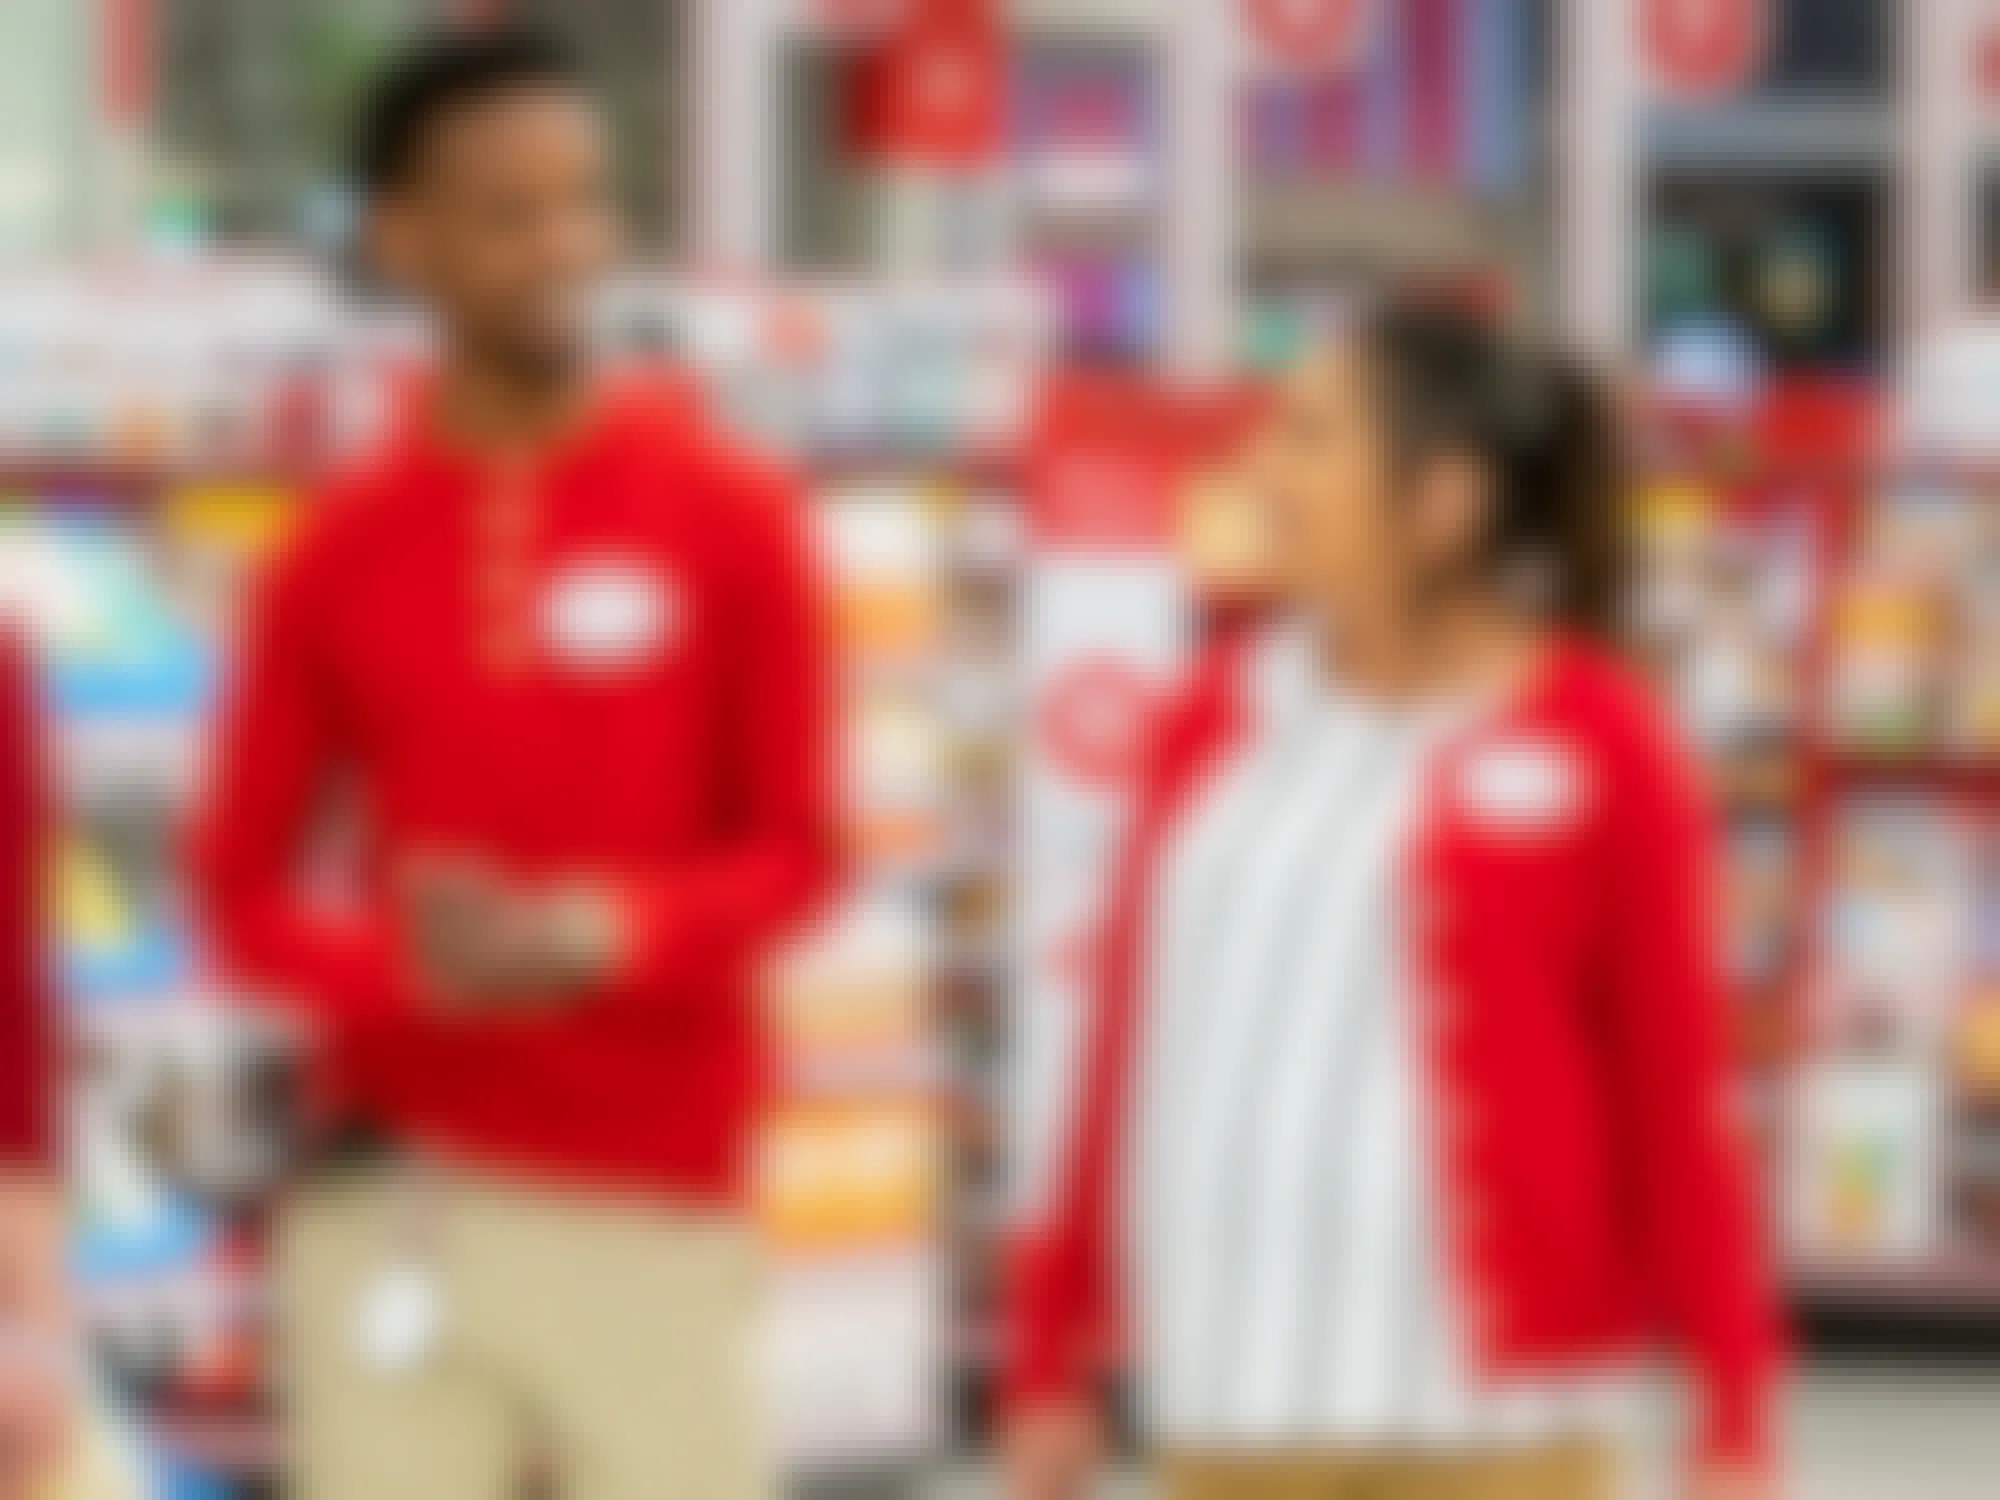 Target employees talking and walking inside Target